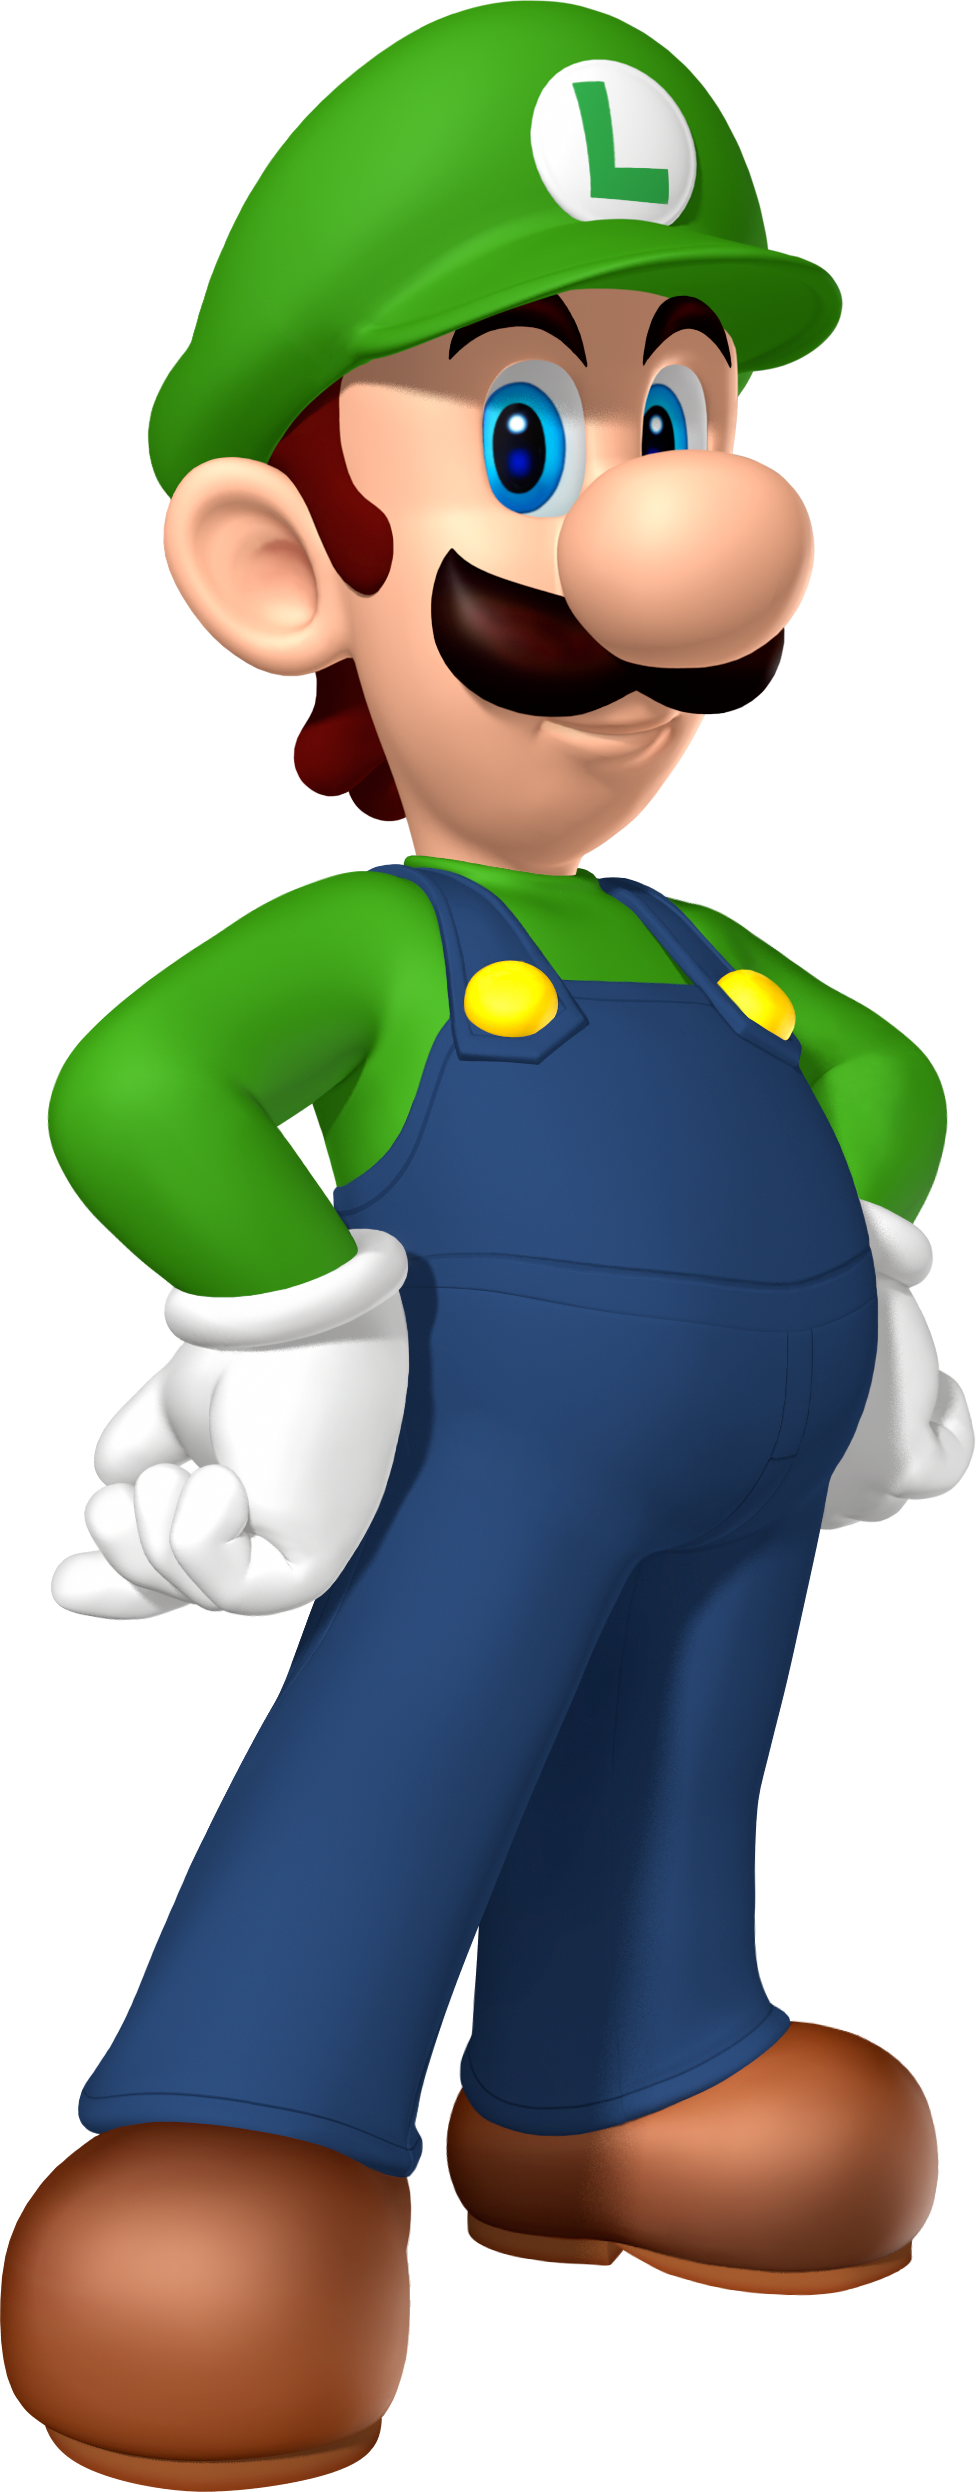 Luigi Image PNG Image